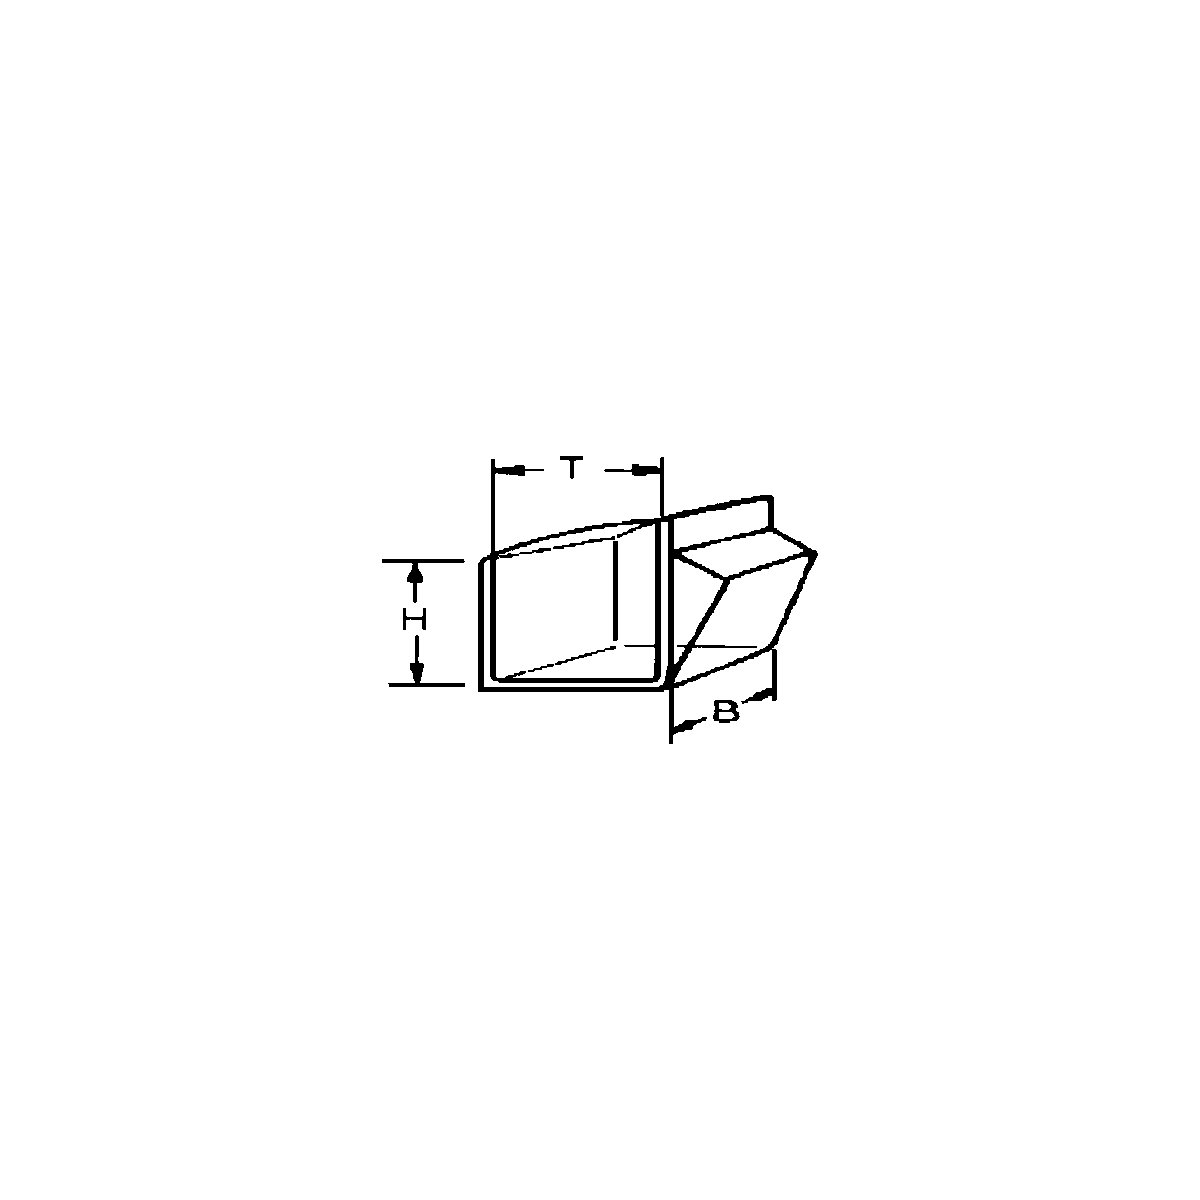 Sistem de depozitare cu cutie cu clapetă (Imagine produs 6)-5